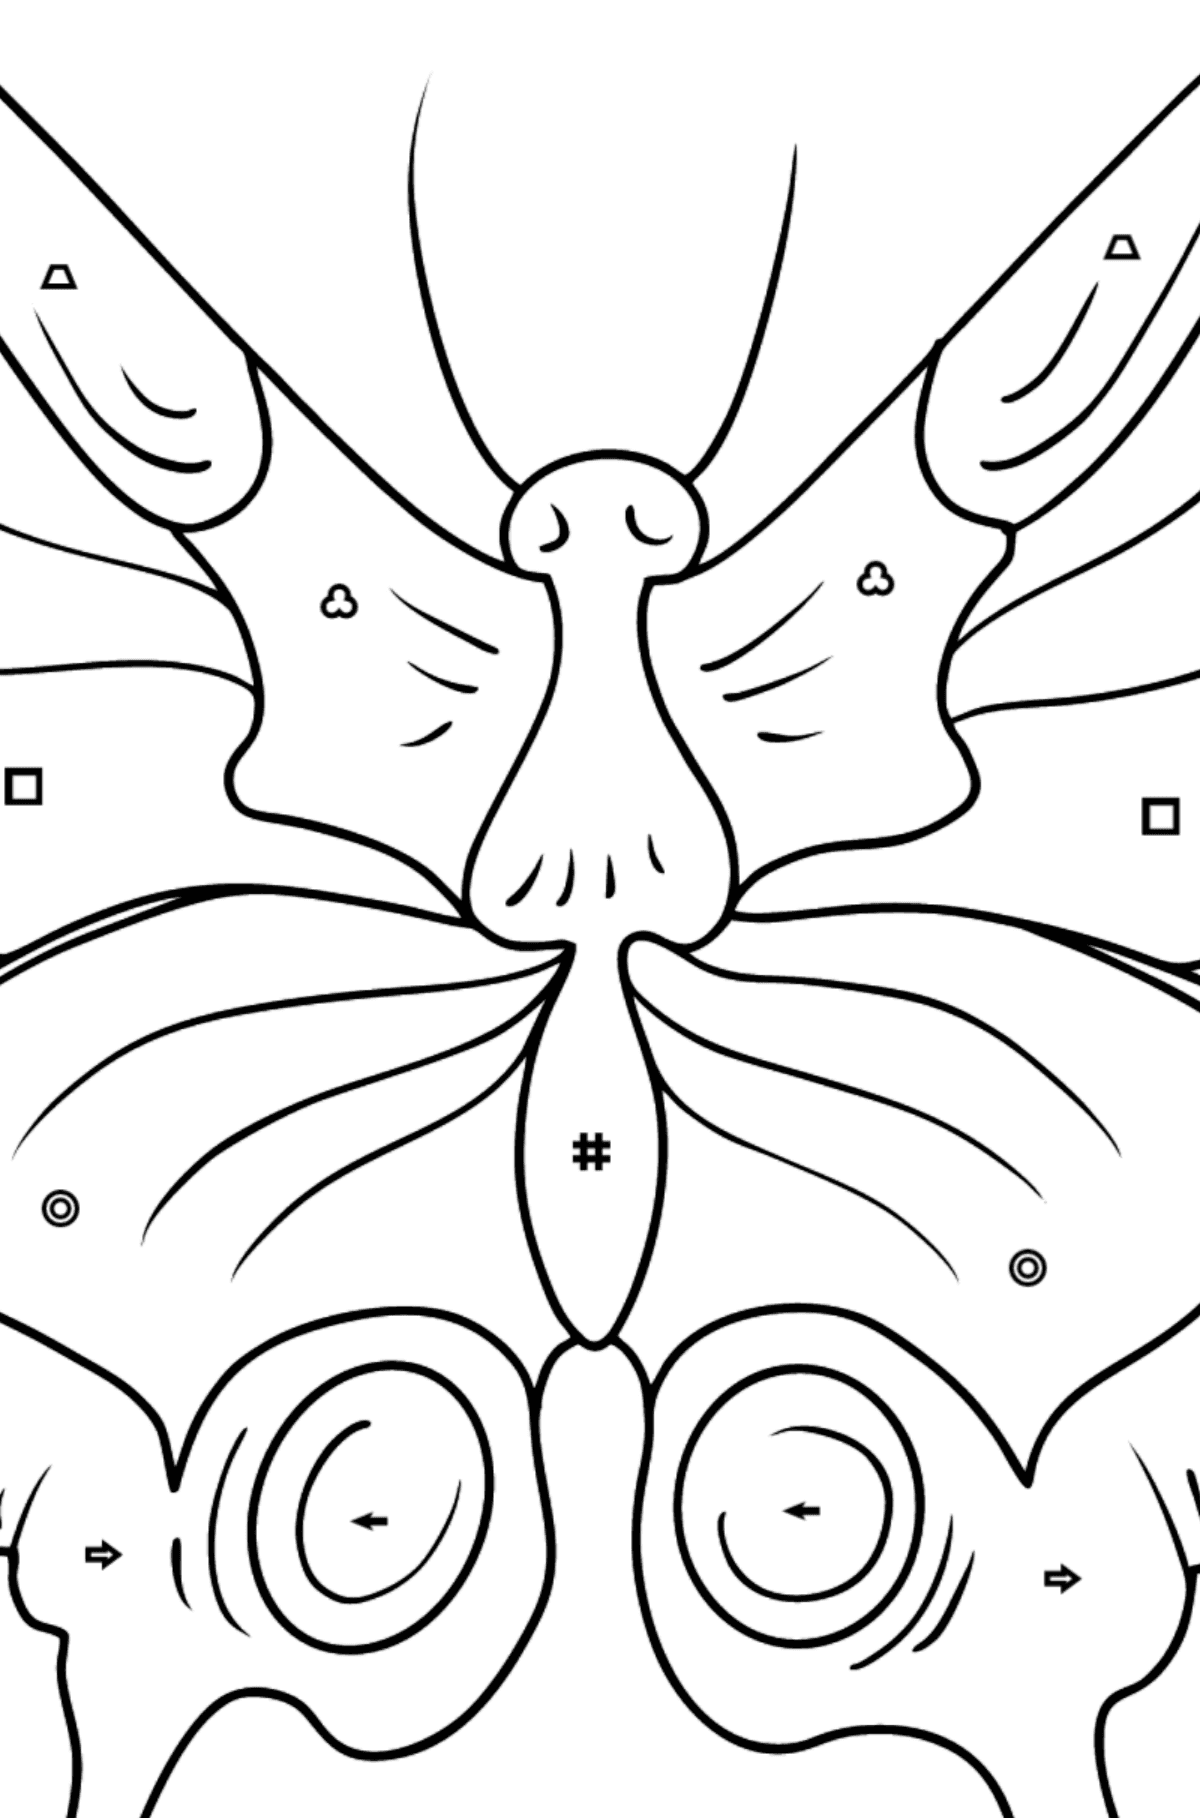 Kolorowanka Motyl paziowaty - Kolorowanie według symboli i figur geometrycznych dla dzieci